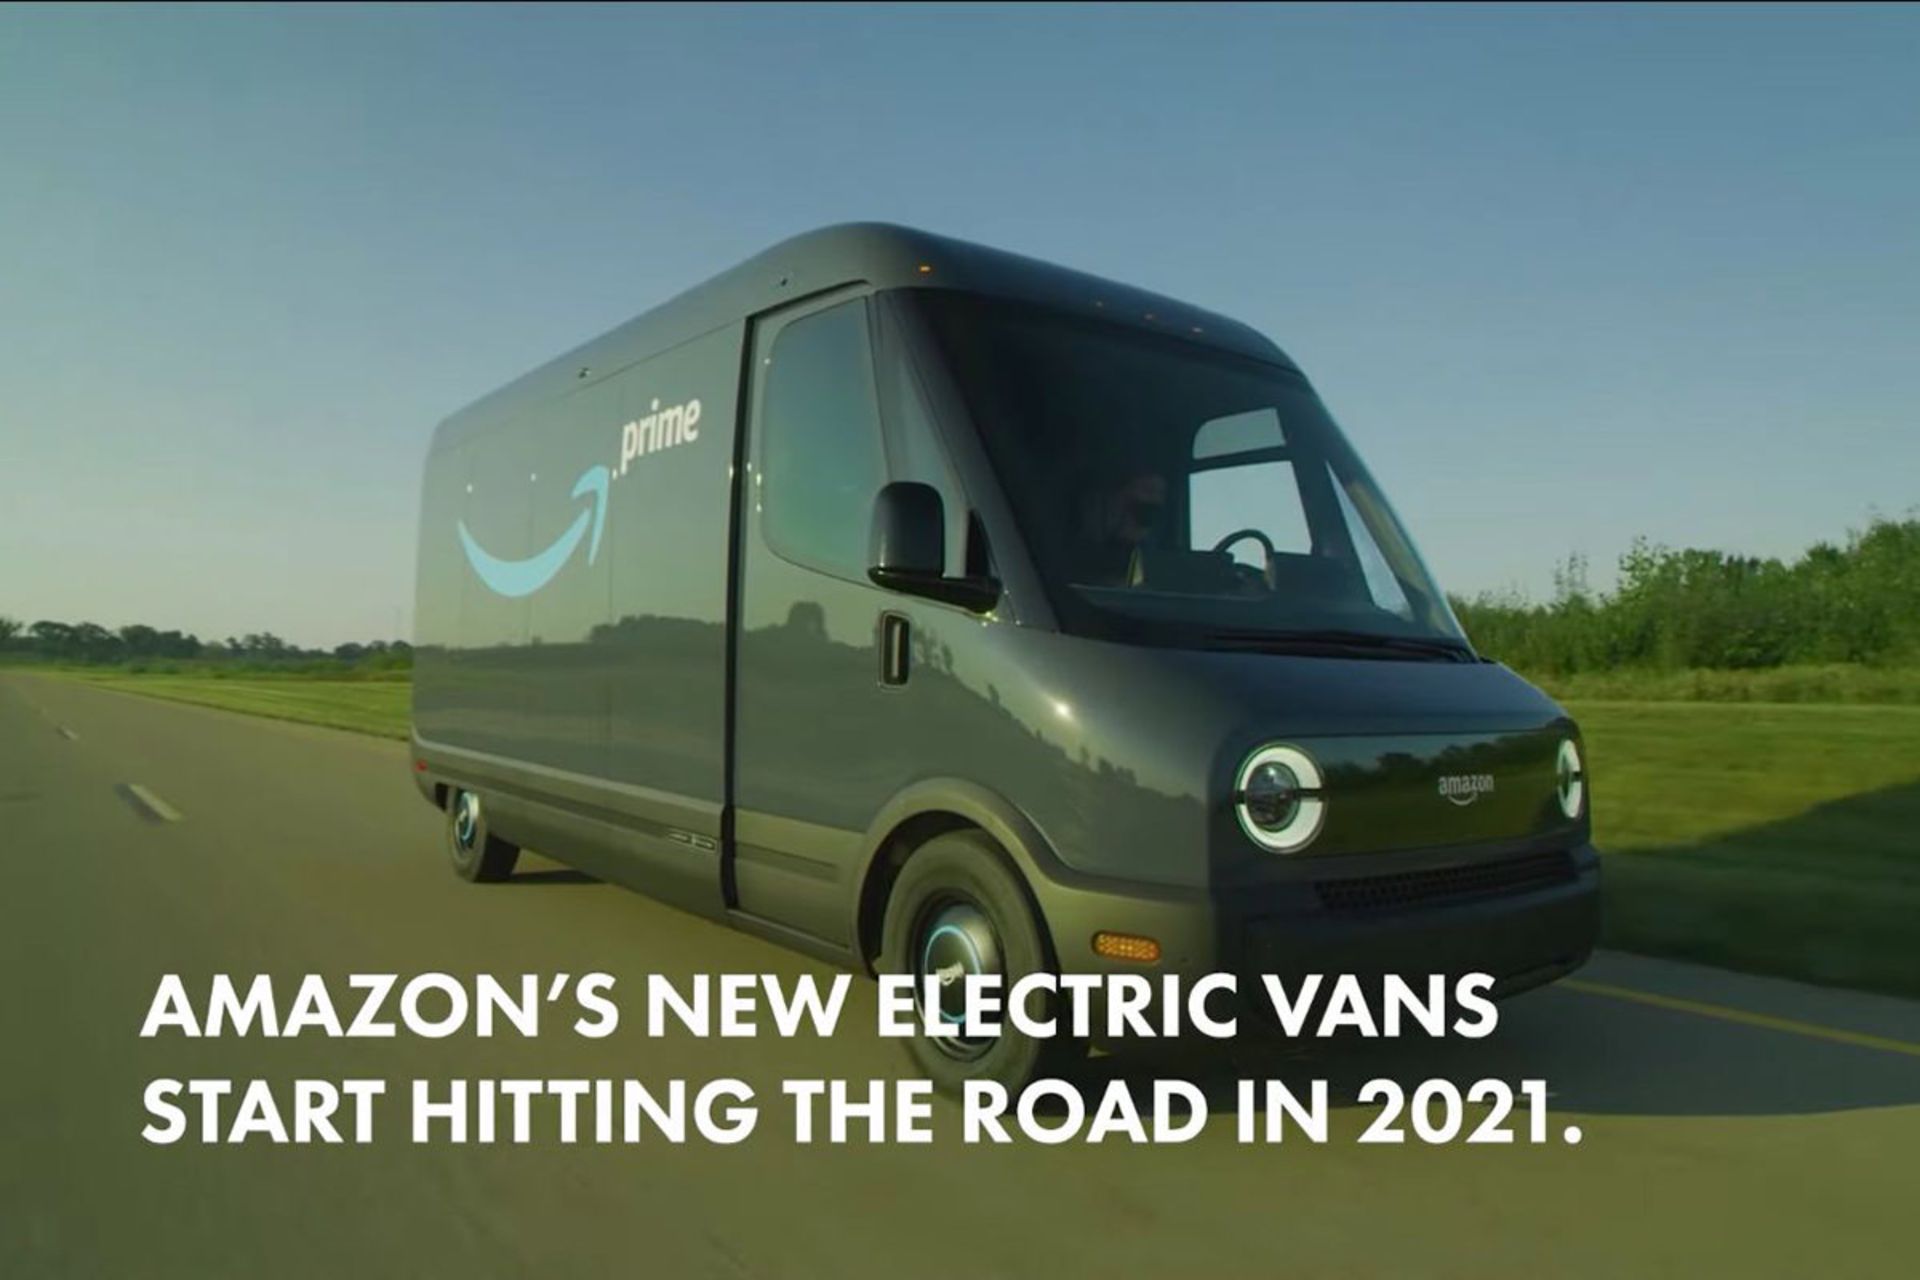 نمای جلو ون الکتریکی تحویل کالا آمازون / Amazon electric delivery van